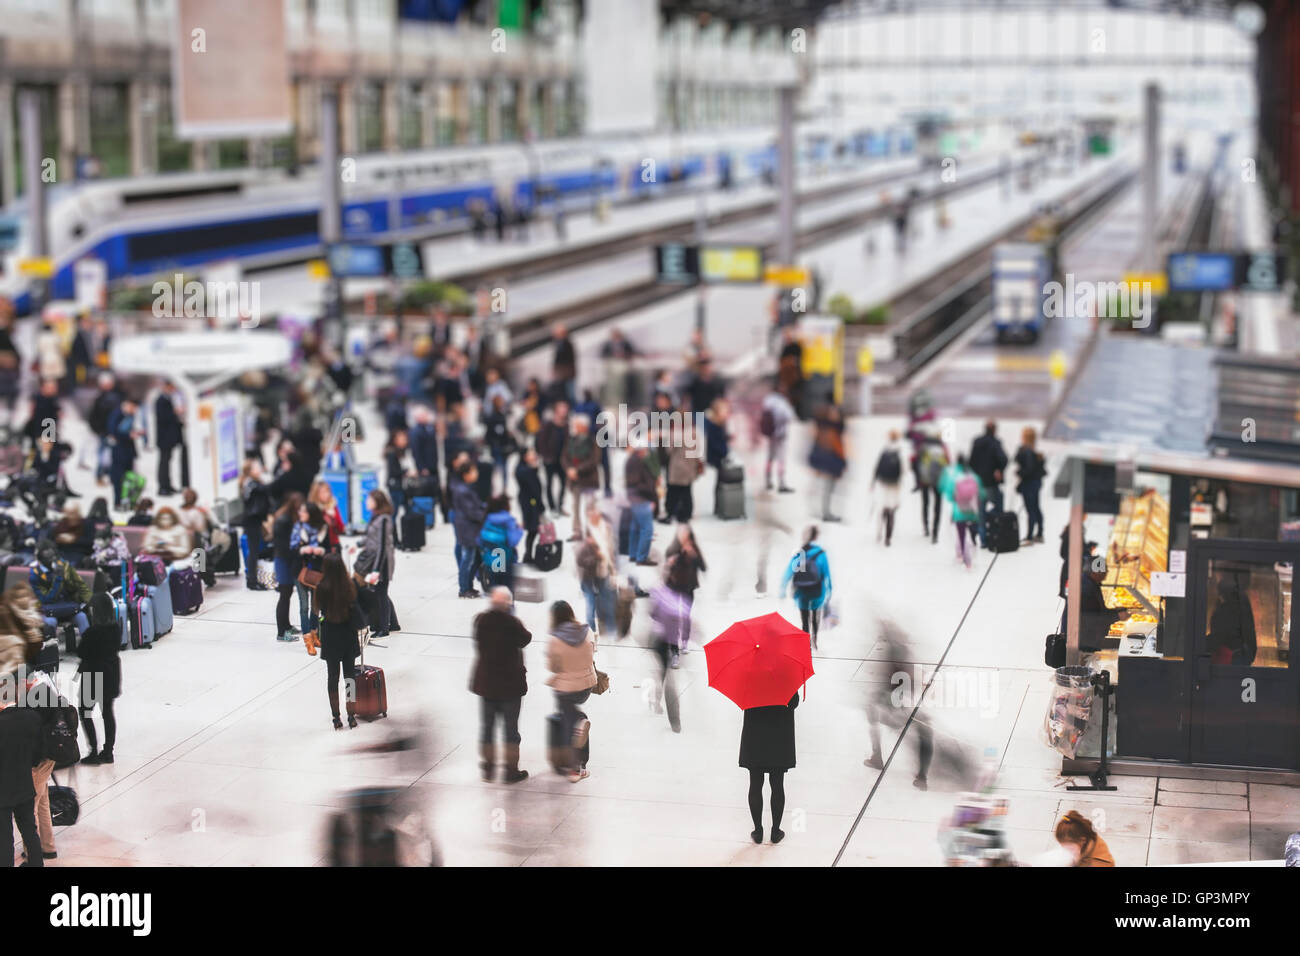 Mujer con sombrilla roja esperando en la estación de tren y la gente borrosa en movimiento, soledad concepto Foto de stock